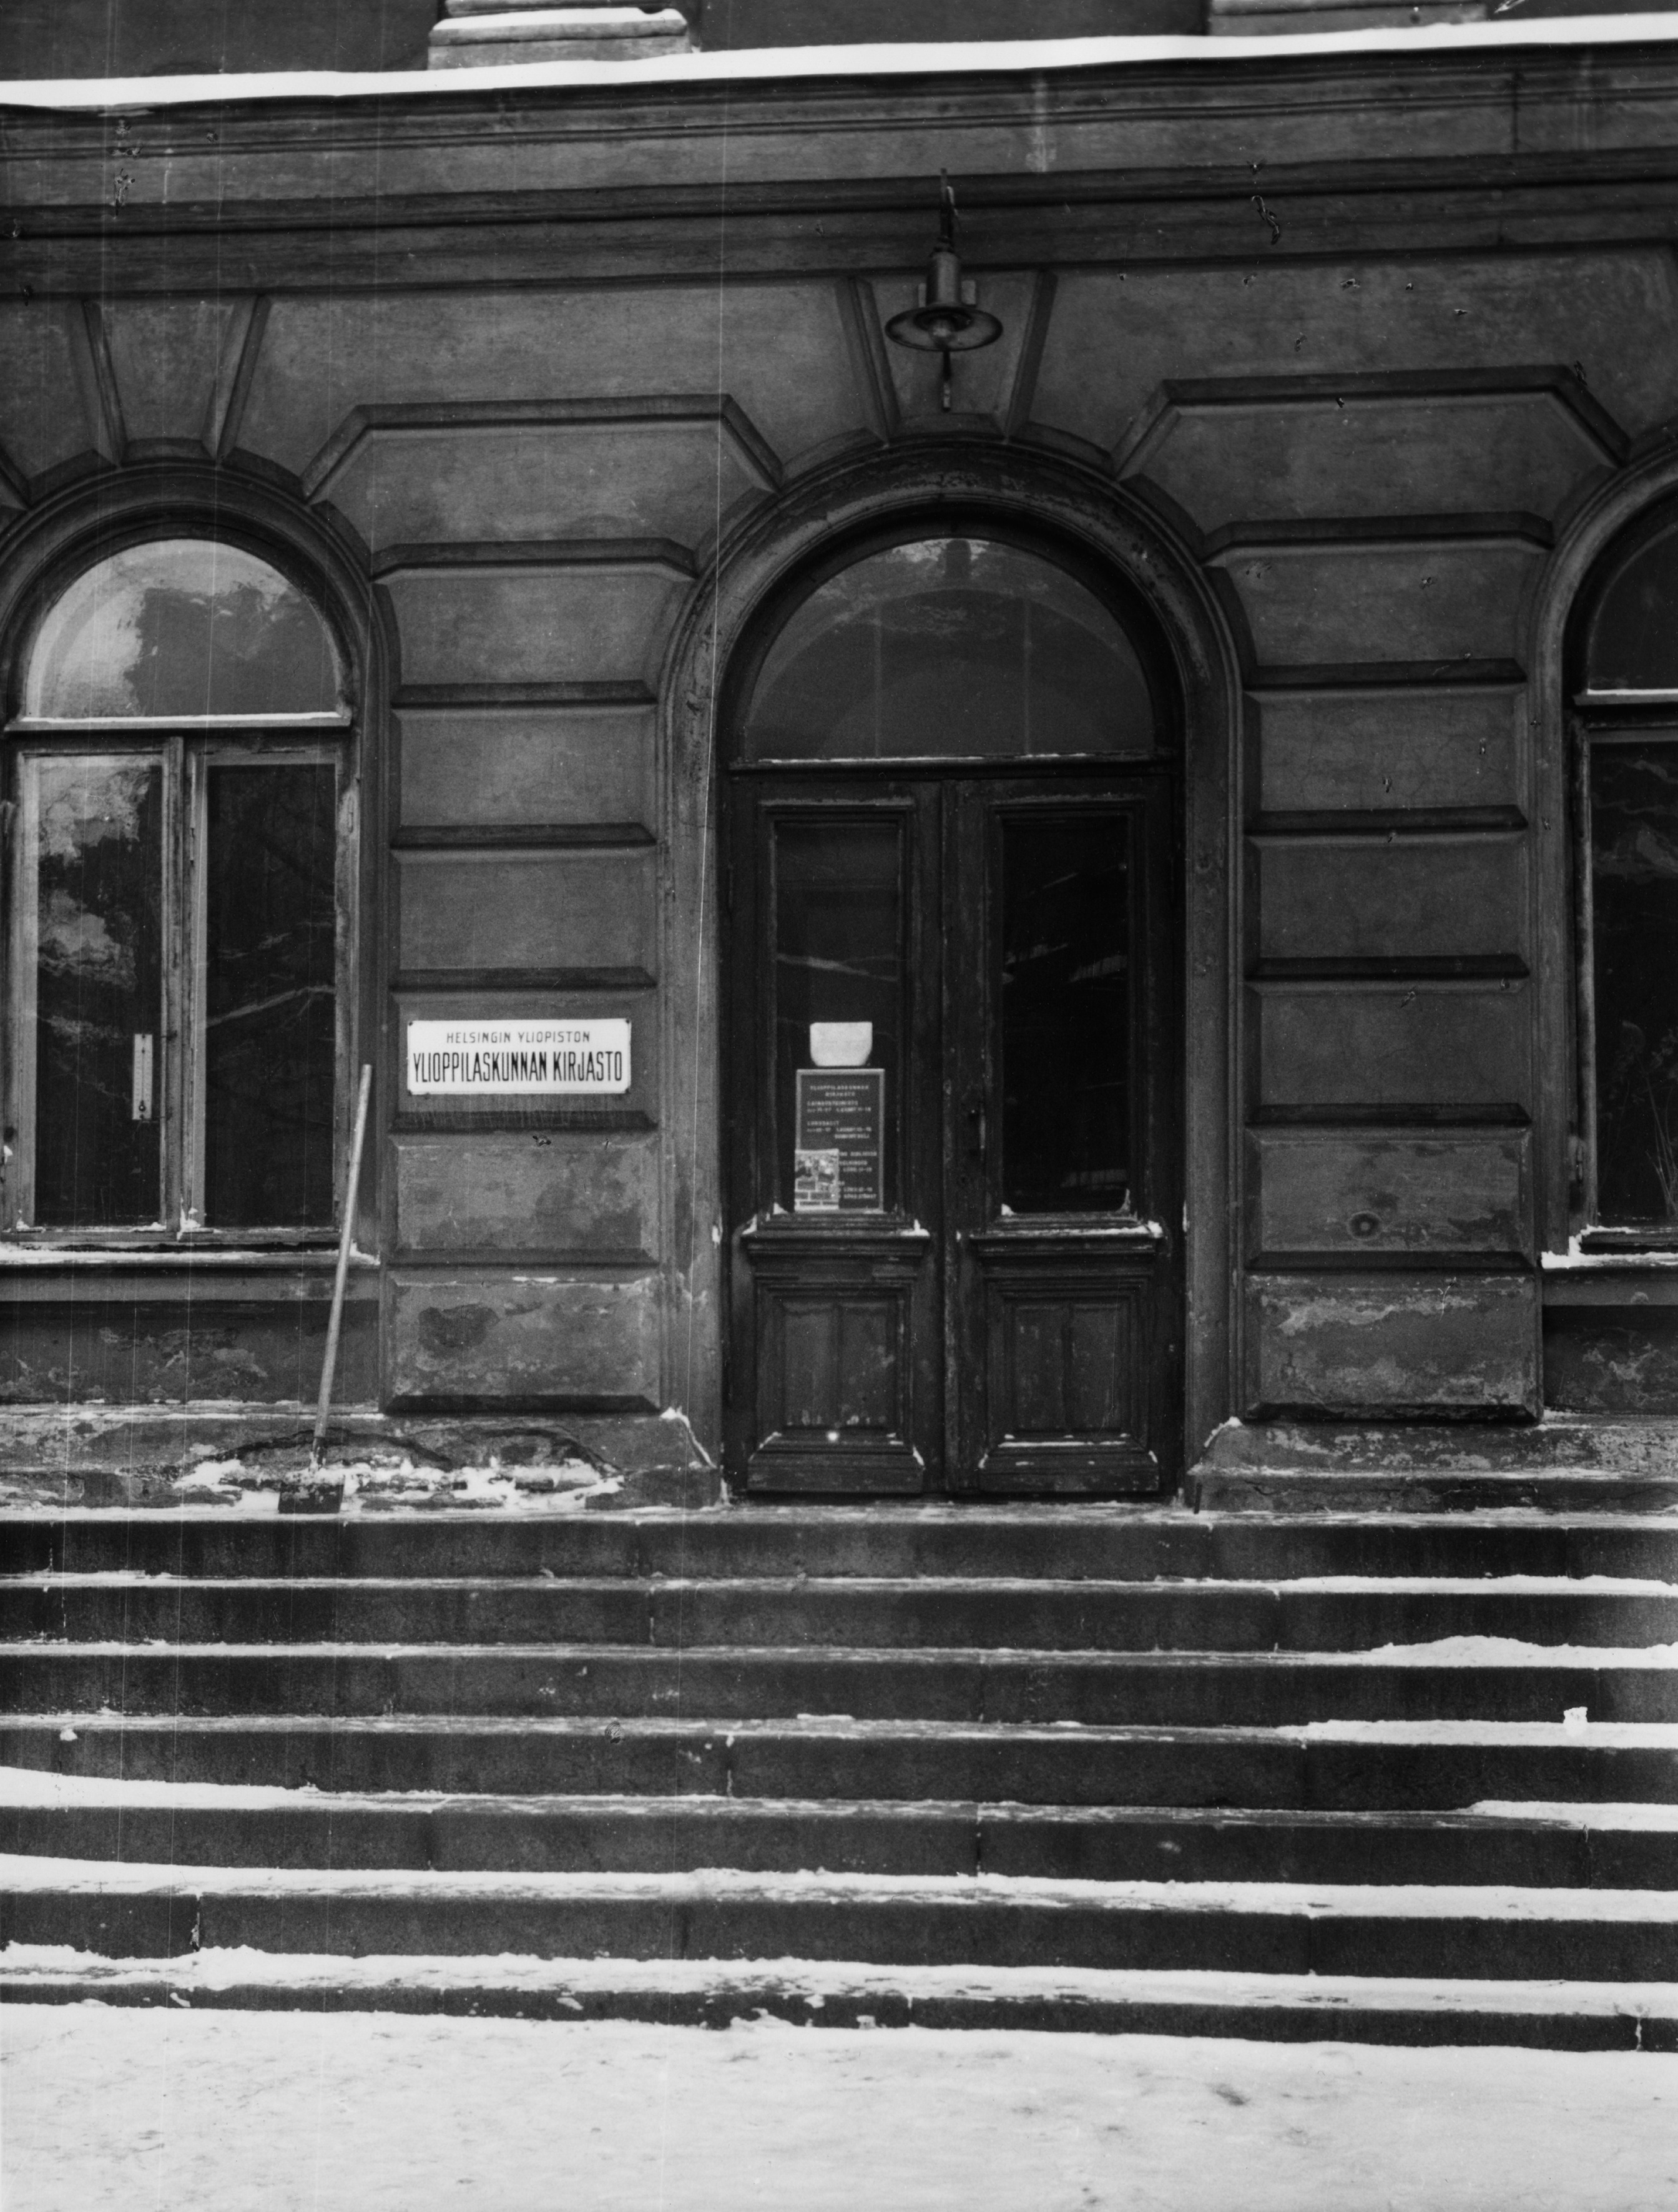 Helsingin yliopiston ylioppilaskunnan kirjasto. Mannerheimintie 5. Kaivopihan kirjastotalo purettiin v. 1955.